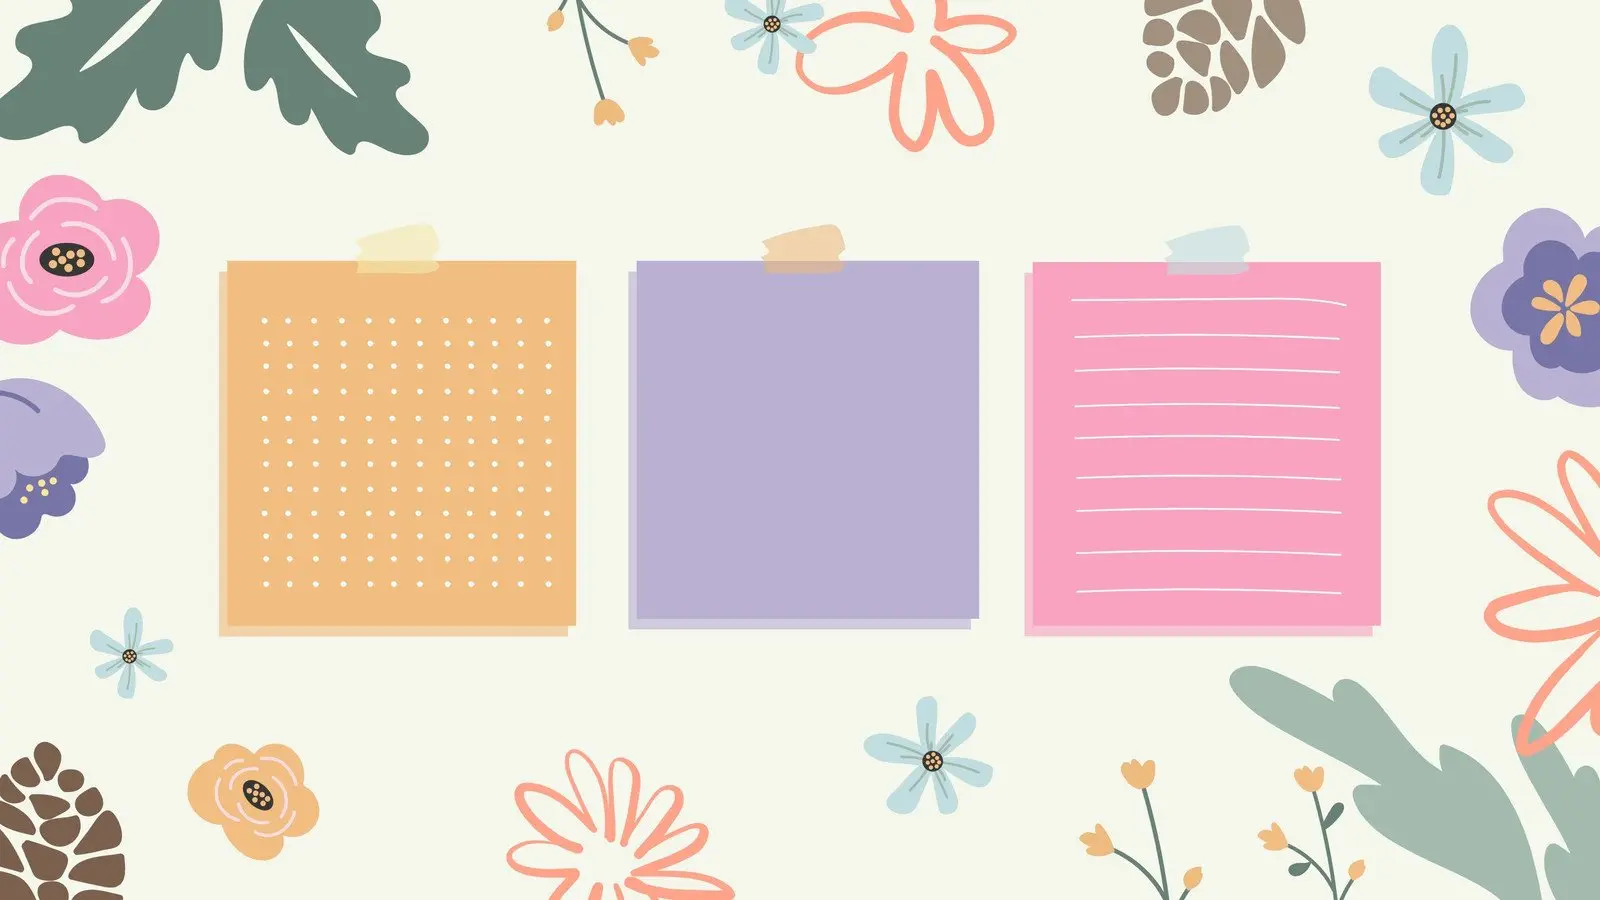 Koleksi Wallpaper Desktop Cantik, Gratis, dan Mudah Diedit di Canva